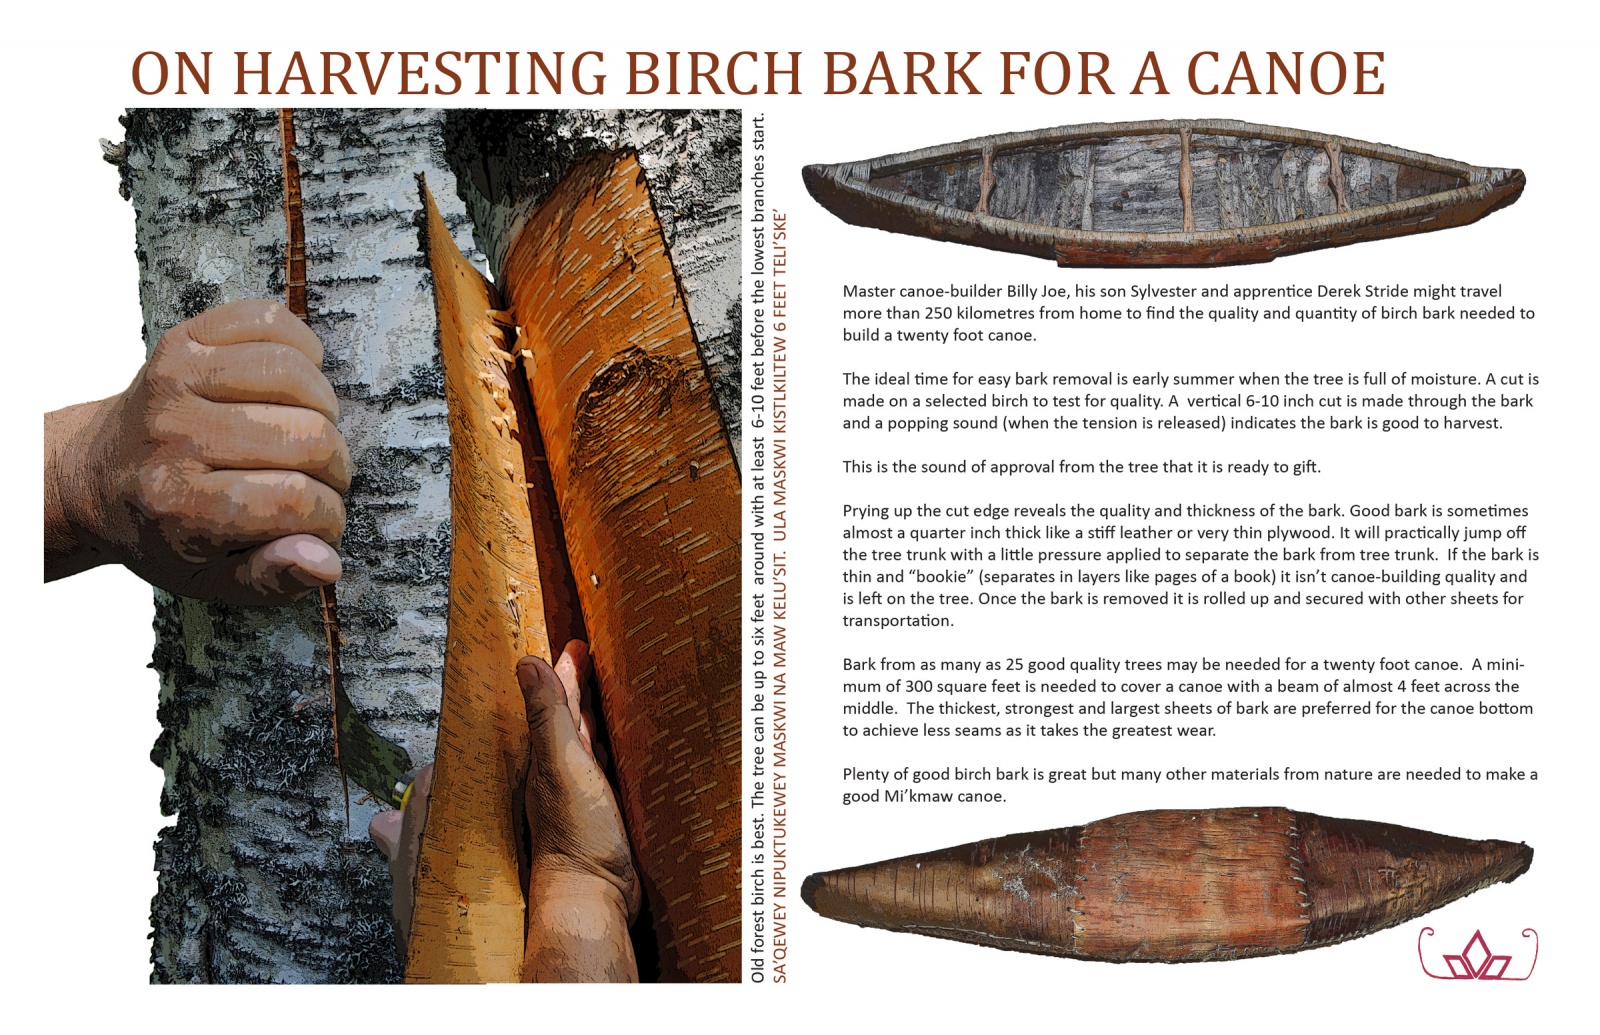 On Harvesting Birch Bark for a Canoe